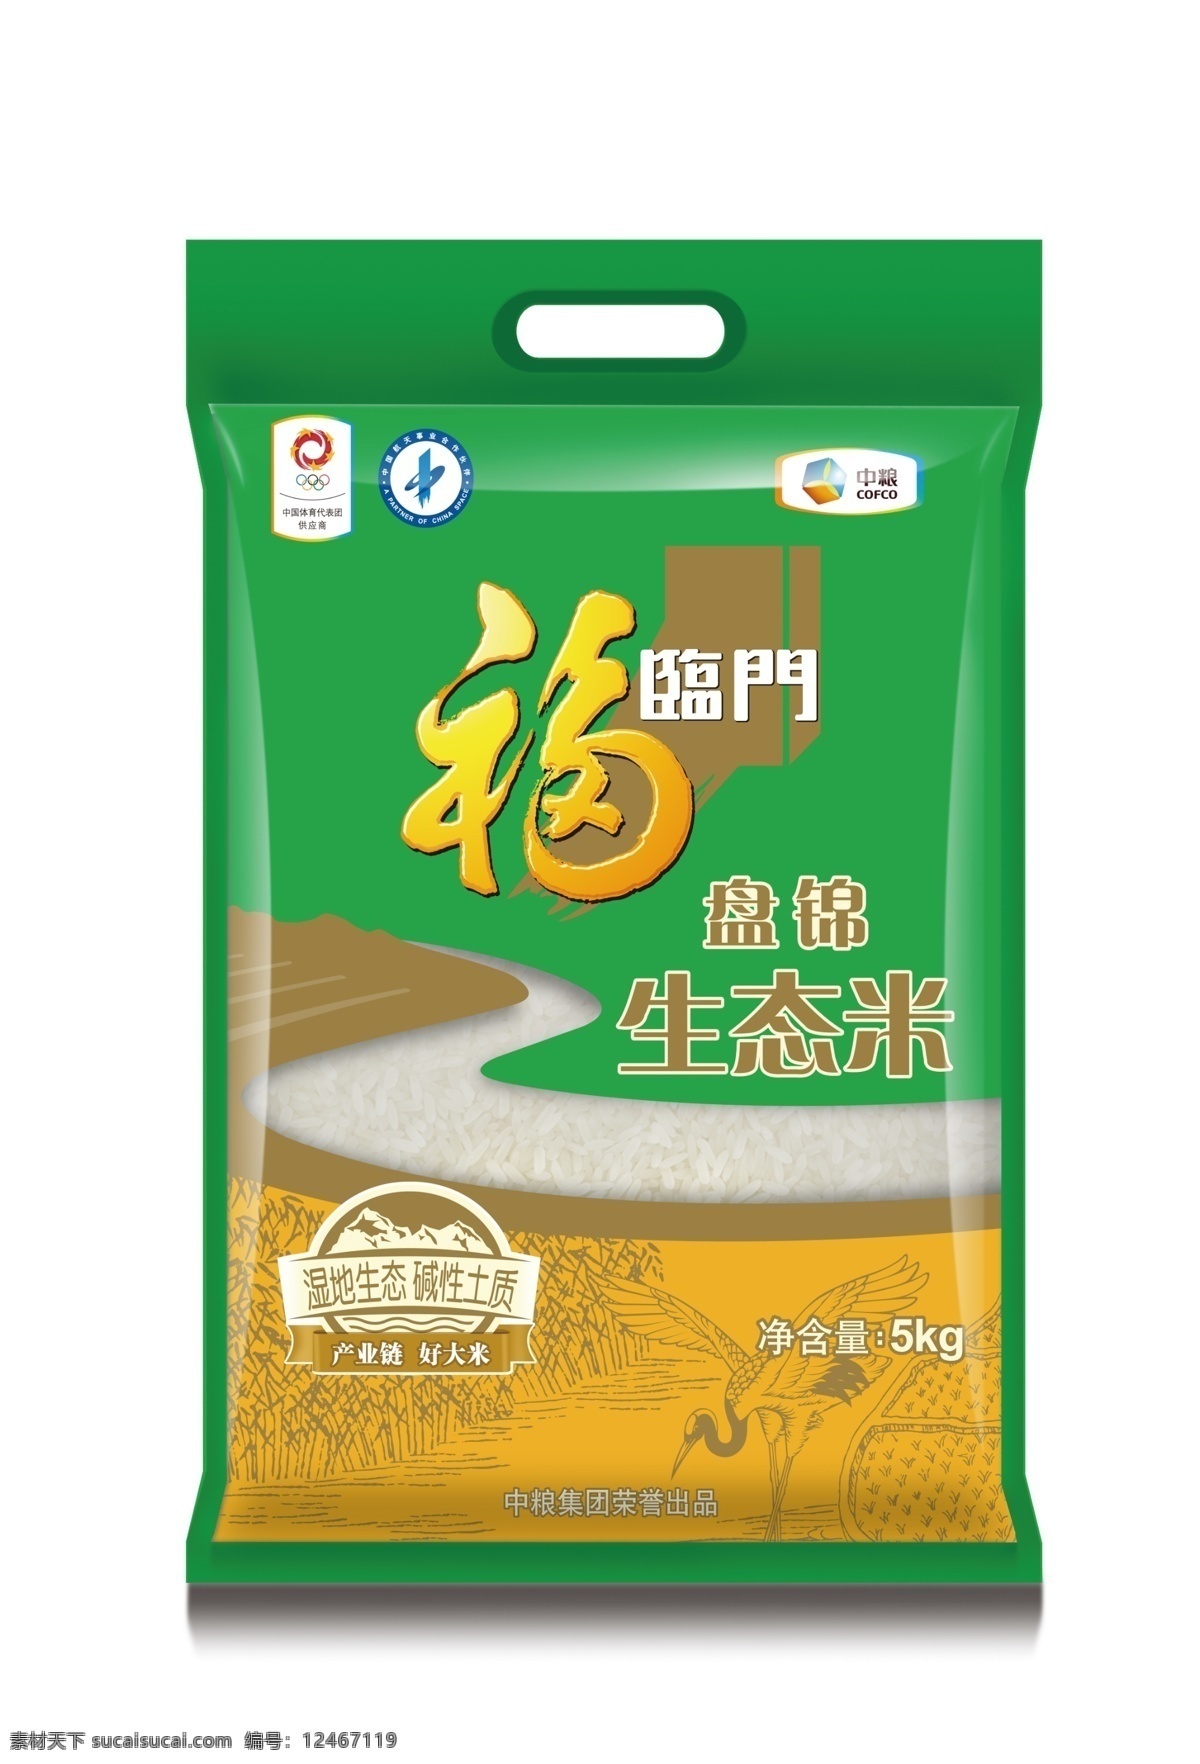 福临门 盘锦 生态 米 5kg 模版下载 大米 生态米 中粮 包装设计 广告设计模板 源文件